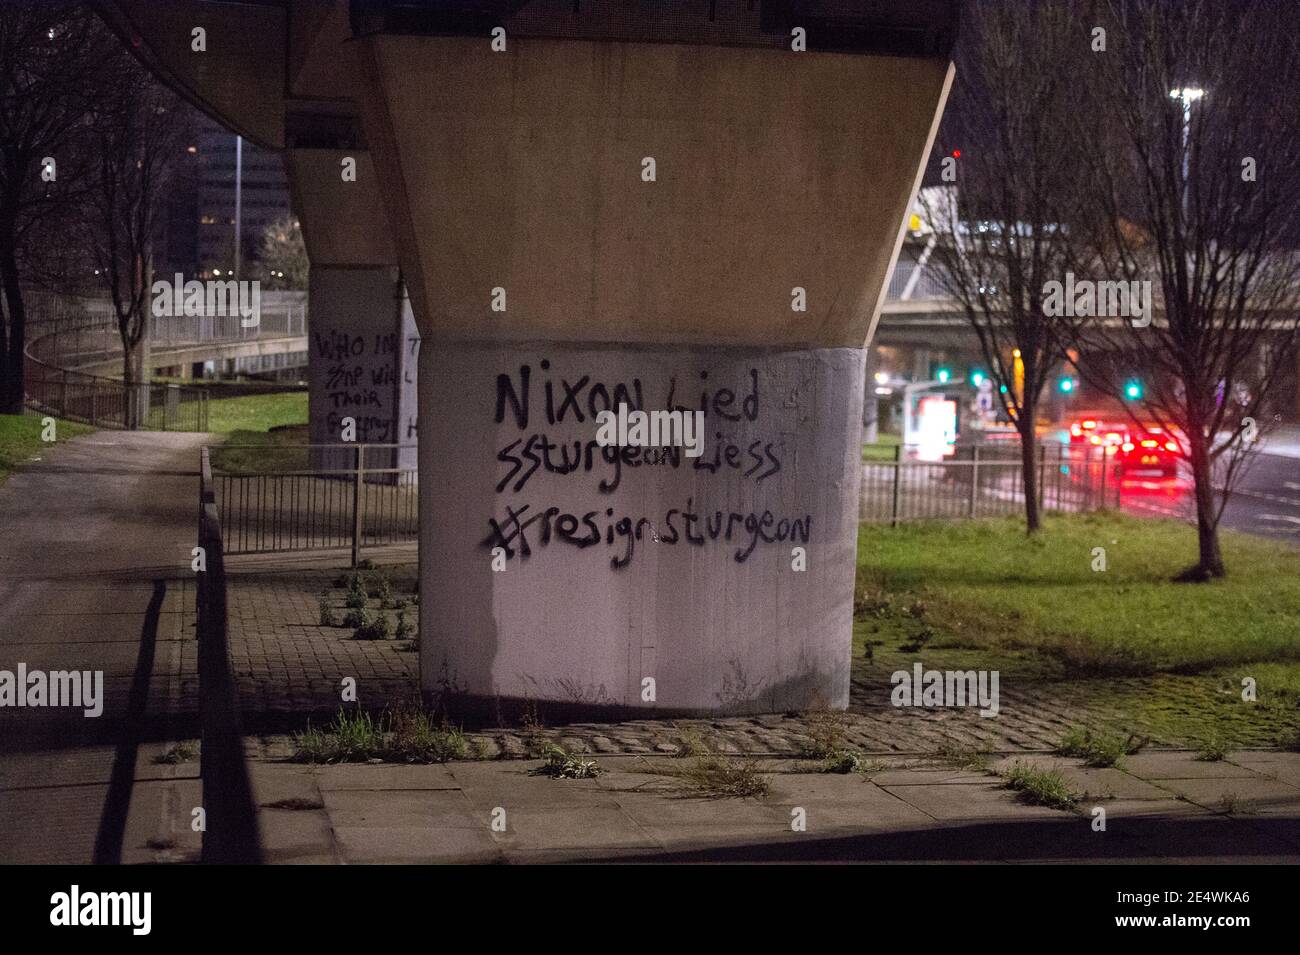 Glasgow, Scozia, Regno Unito. 25 Gennaio 2021. Nella foto: ‘Clydebanksy', che trae ispirazione dal nome Banksy l'artista, si vede spruzzare uno slogan su una delle colonne del Kingston Bridge che recita: "NIXON LIED SSTURGEON LIESS n. RASSEGNAZIONE STORIONE". Egli ha dipinto nello Schutzstaffel AKA il doppio ‘SS' con le parole ‘Sturgeon' e la parola ‘bugie' per fare un punto su come ritiene che la SNP stia gestendo il paese. Credit: Colin Fisher/Alamy Live News Foto Stock